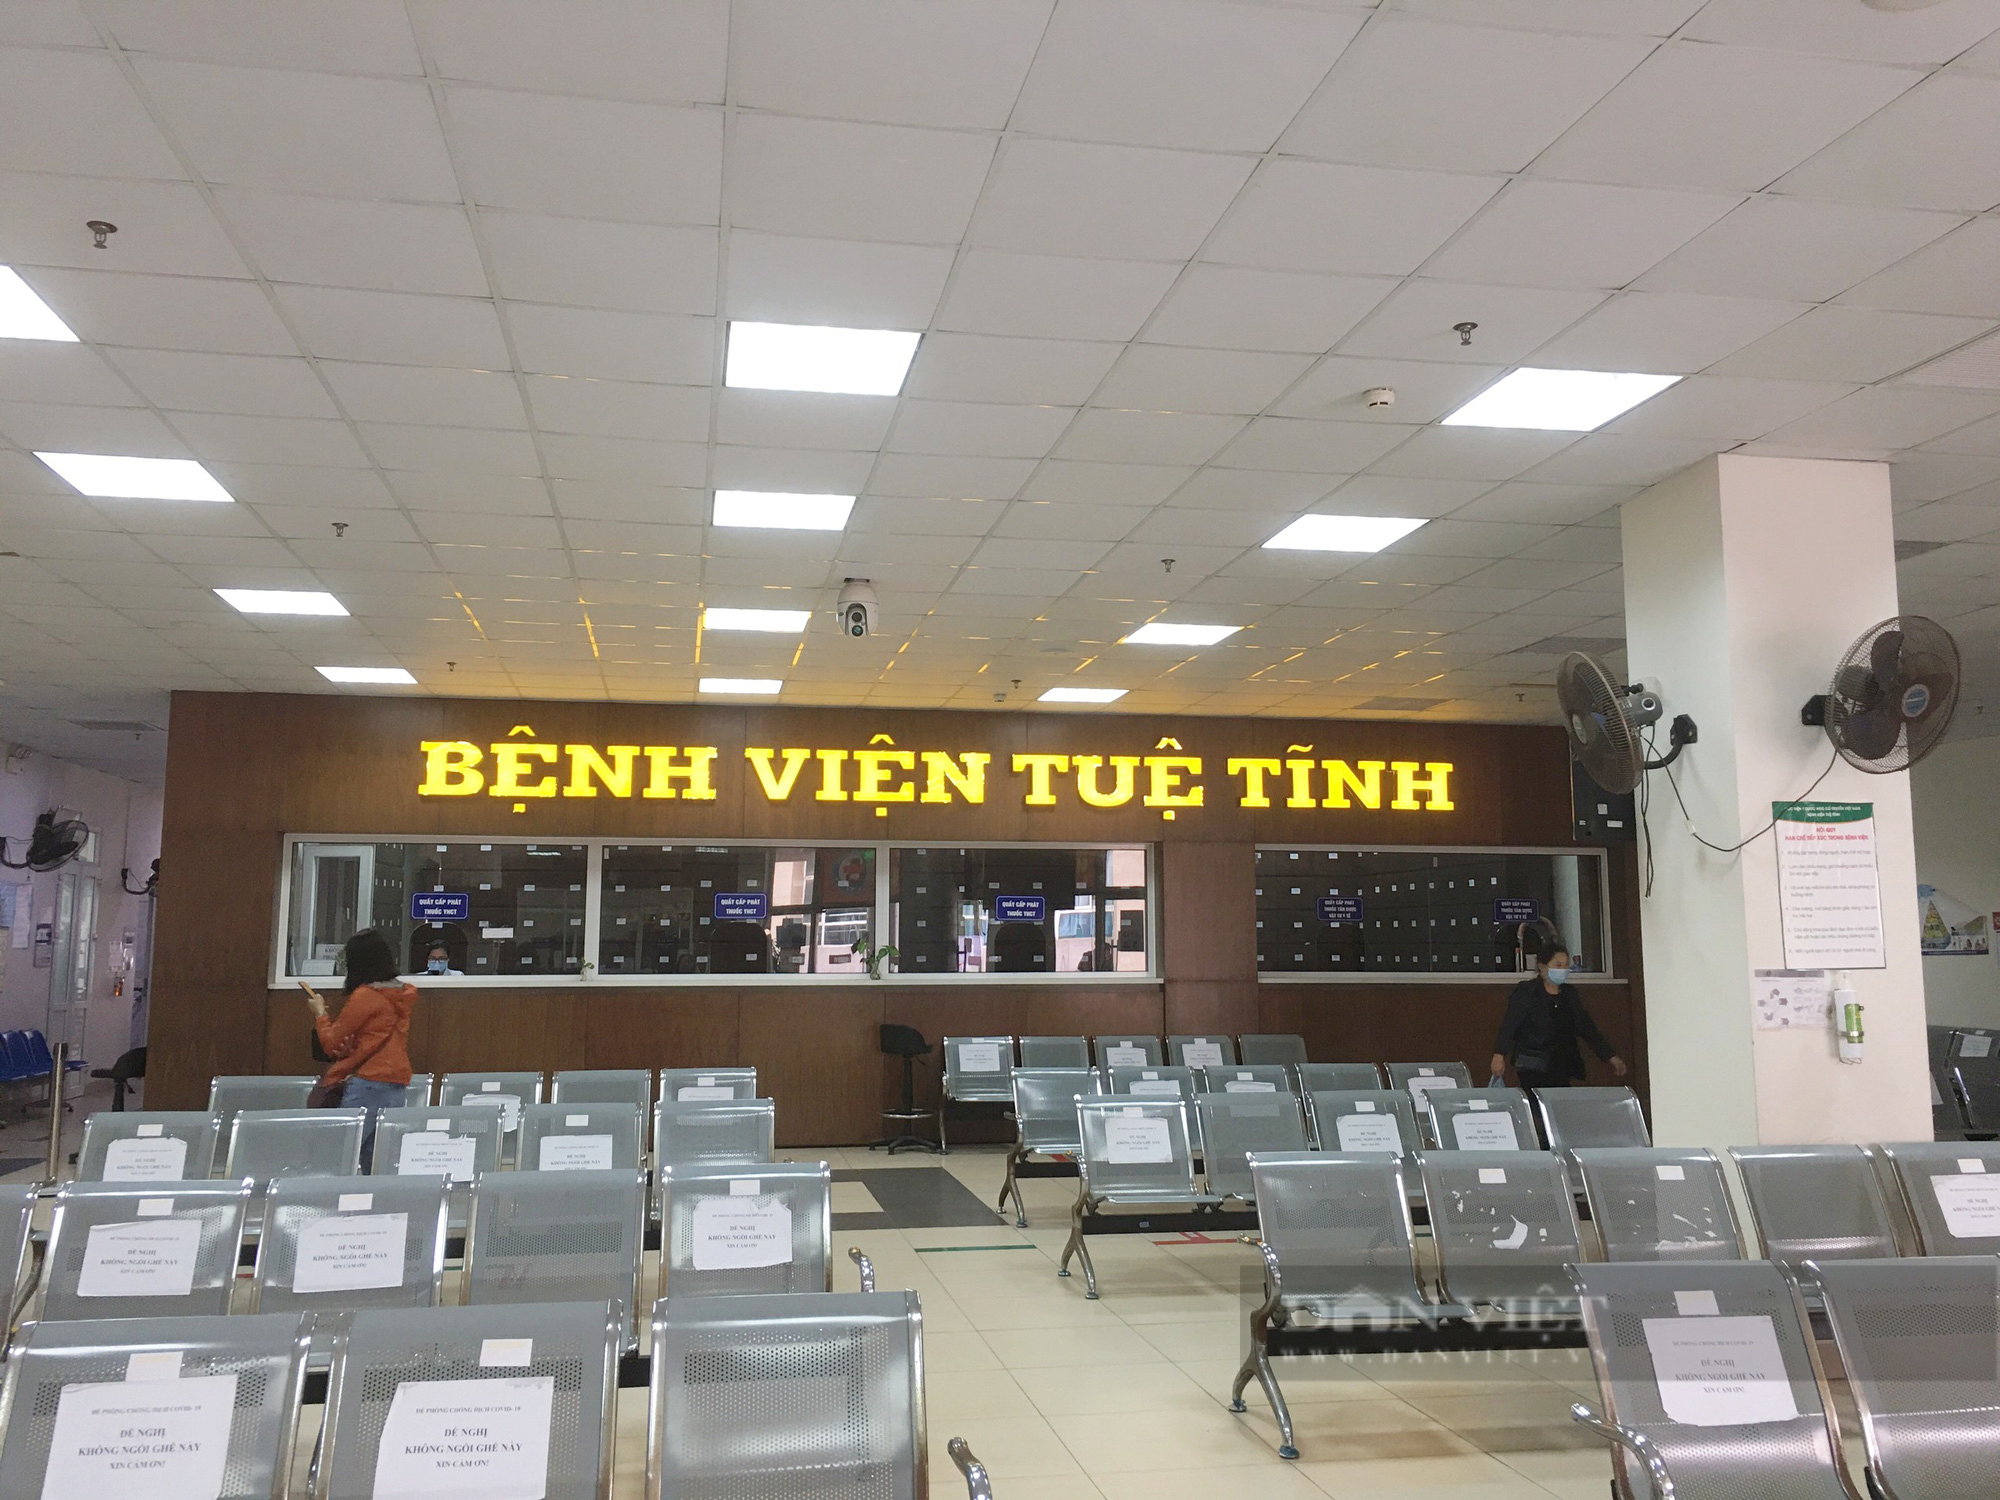 160 cán bộ y tế tại BV Tuệ Tĩnh bị nợ lương: Thanh tra xác minh mua sắm thiết bị y tế - Ảnh 1.